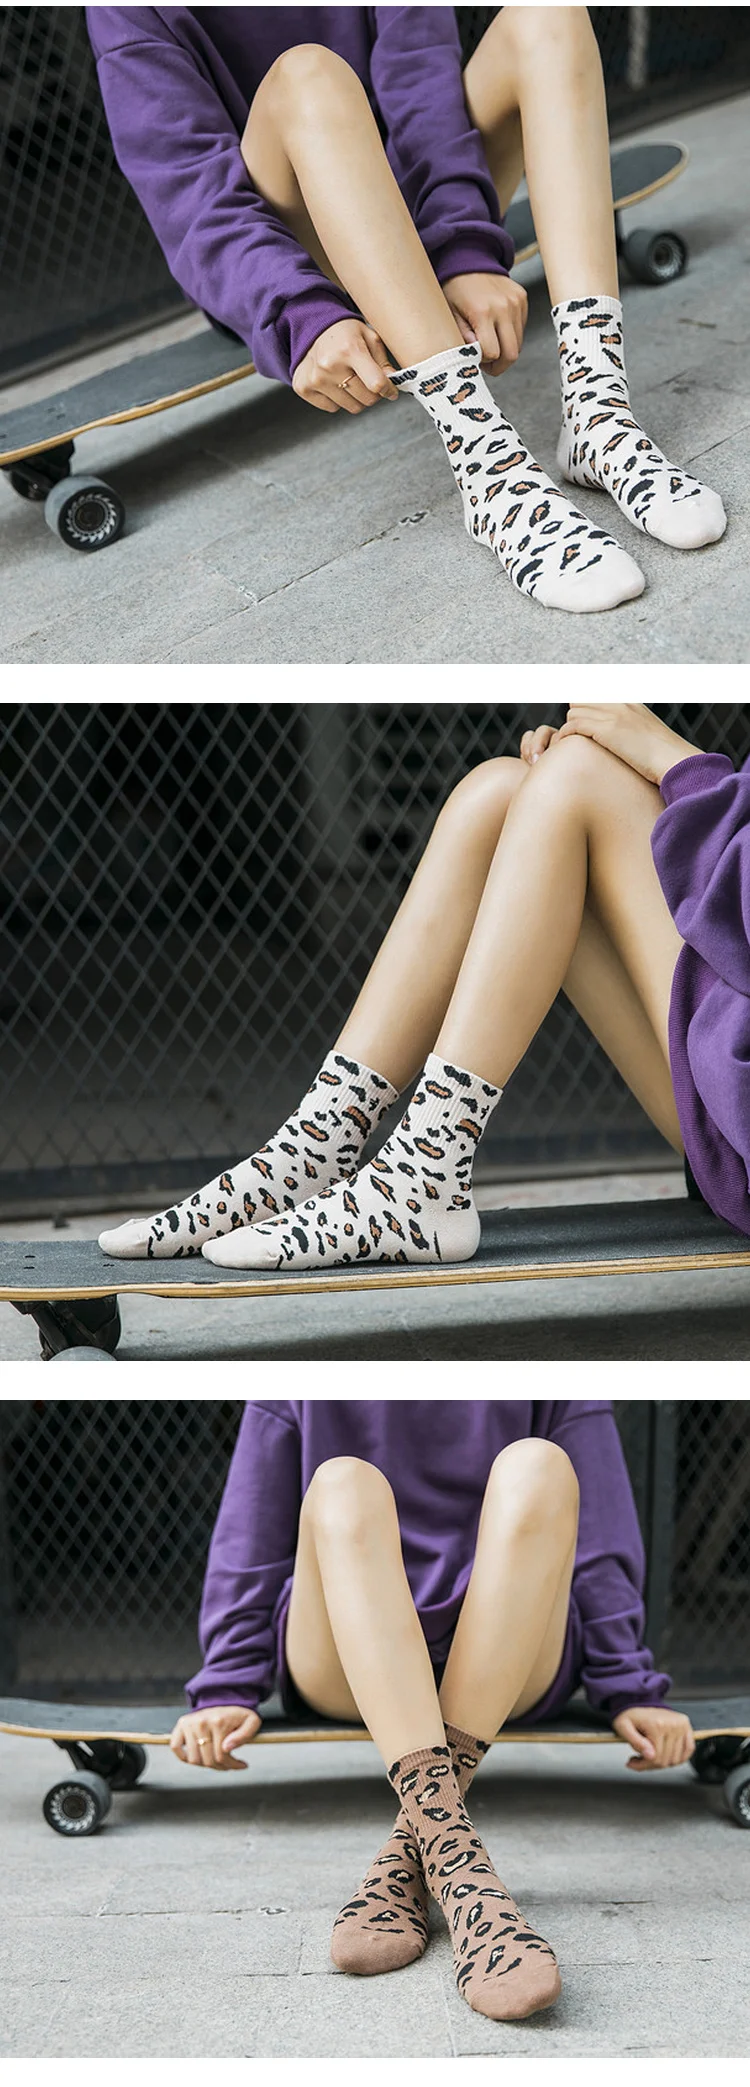 SGEDONE 2018 Горячие леопардовые носки Длинные носки для женщин Мода хлопок Личность забавные Harajuku пятна утепленная одежда бегунов Sox обувь для